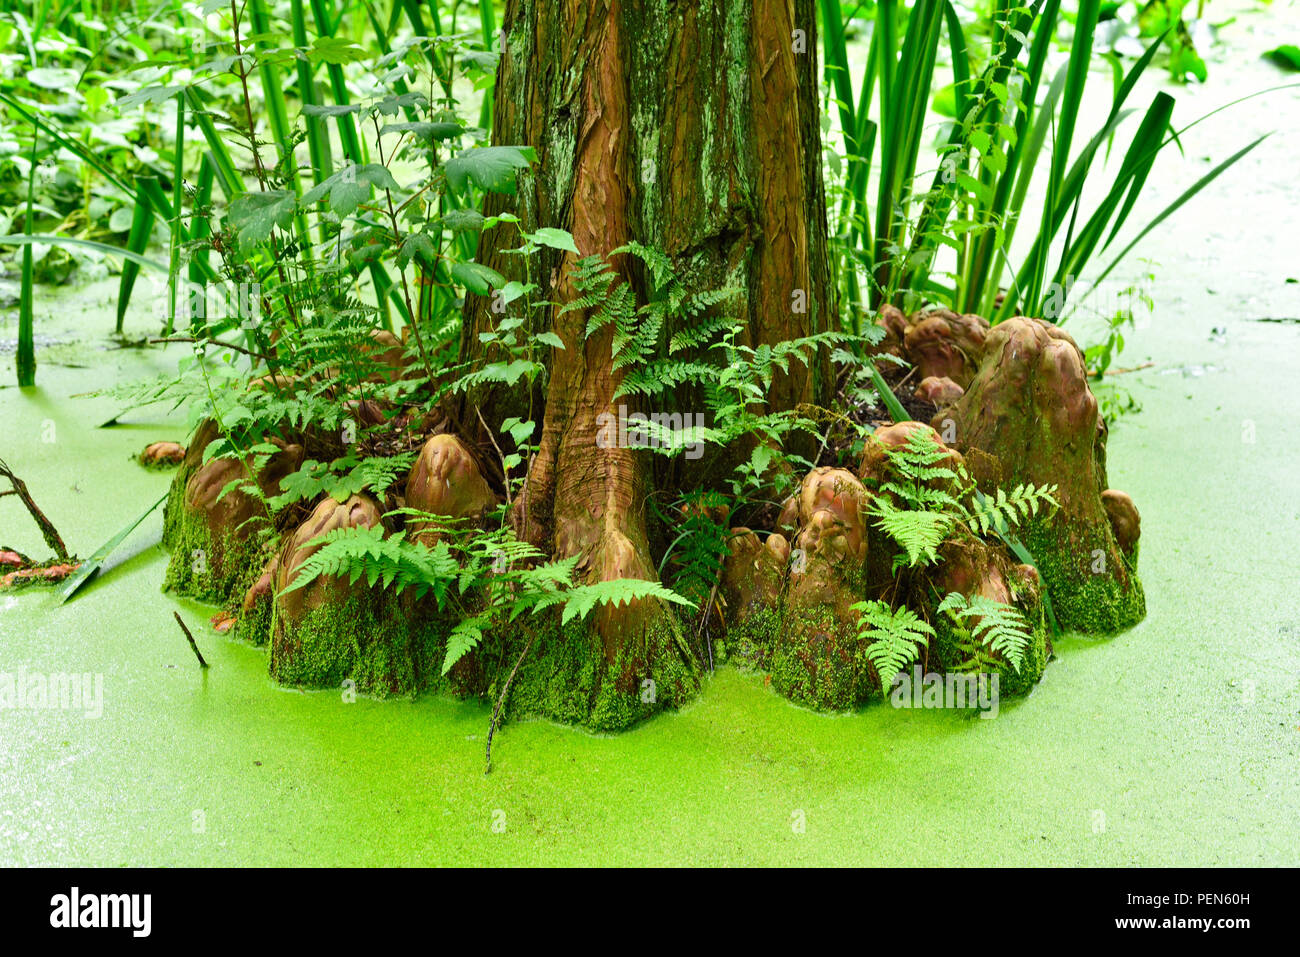 Cypress mit alten Bäumen und grünen Teich Sumpf. Idyllische Natur Hintergrund der Feuchtgebiete. Stockfoto